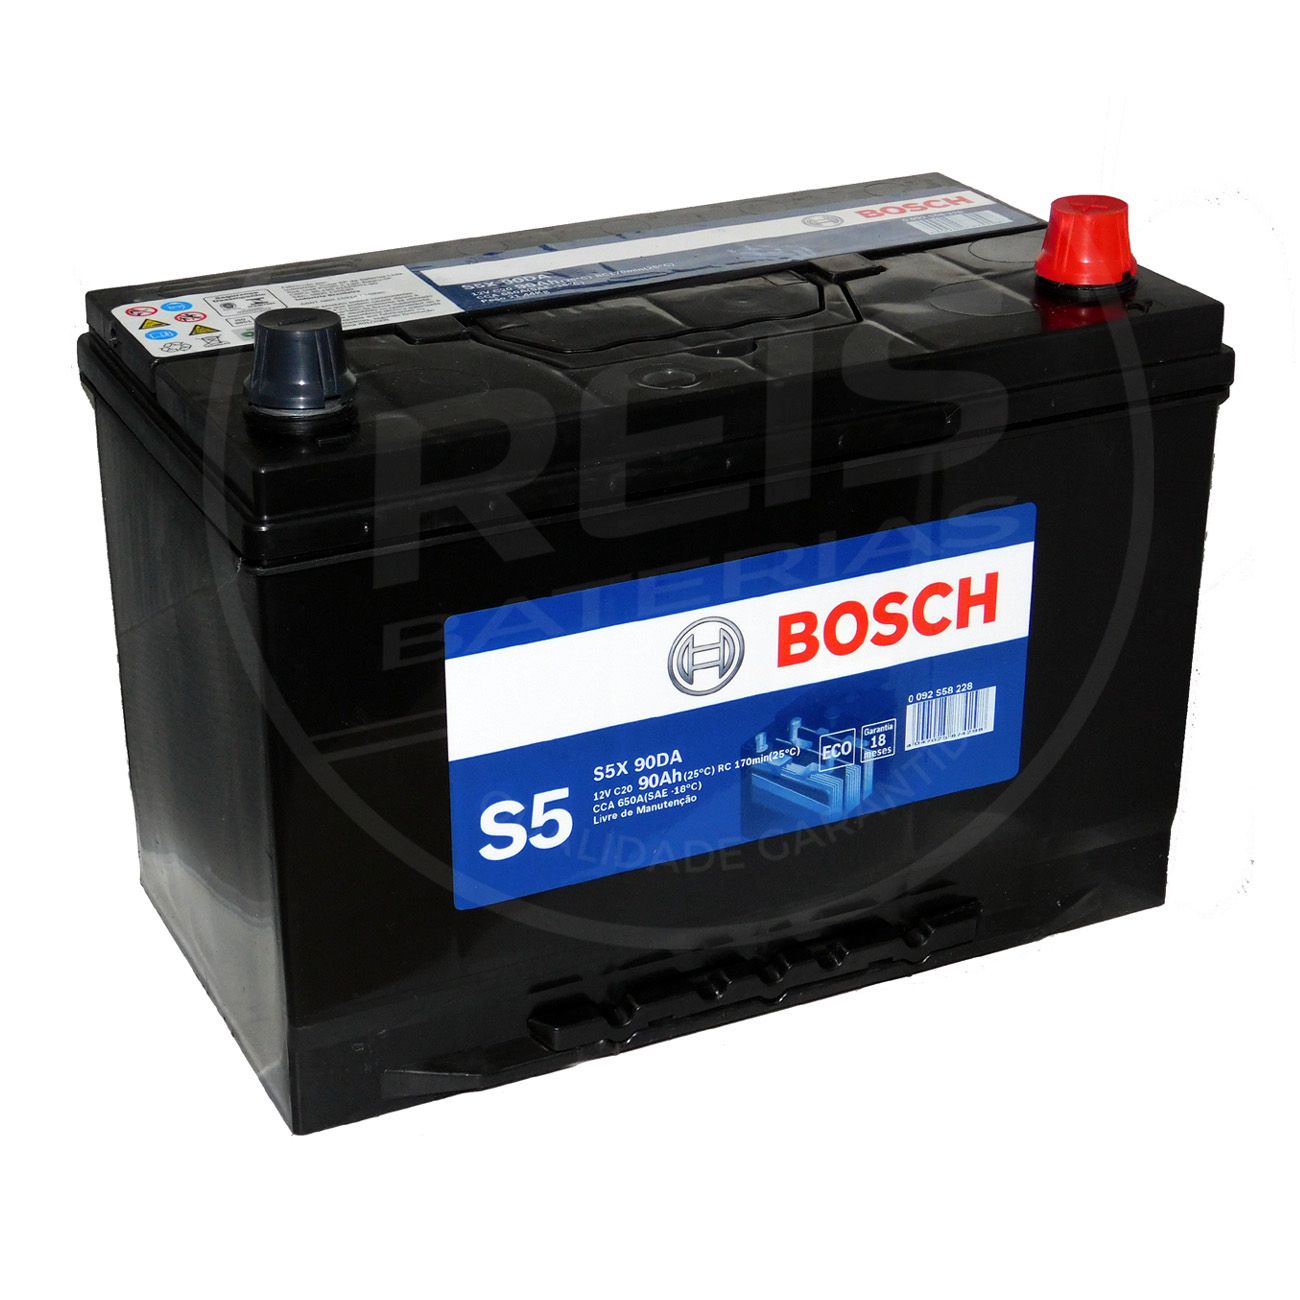 Bateria Bosch 90Ah - S5X90DA - Reis Baterias - Bateria de Carro - Reis  Baterias: Pague em 10X SEM JUROS